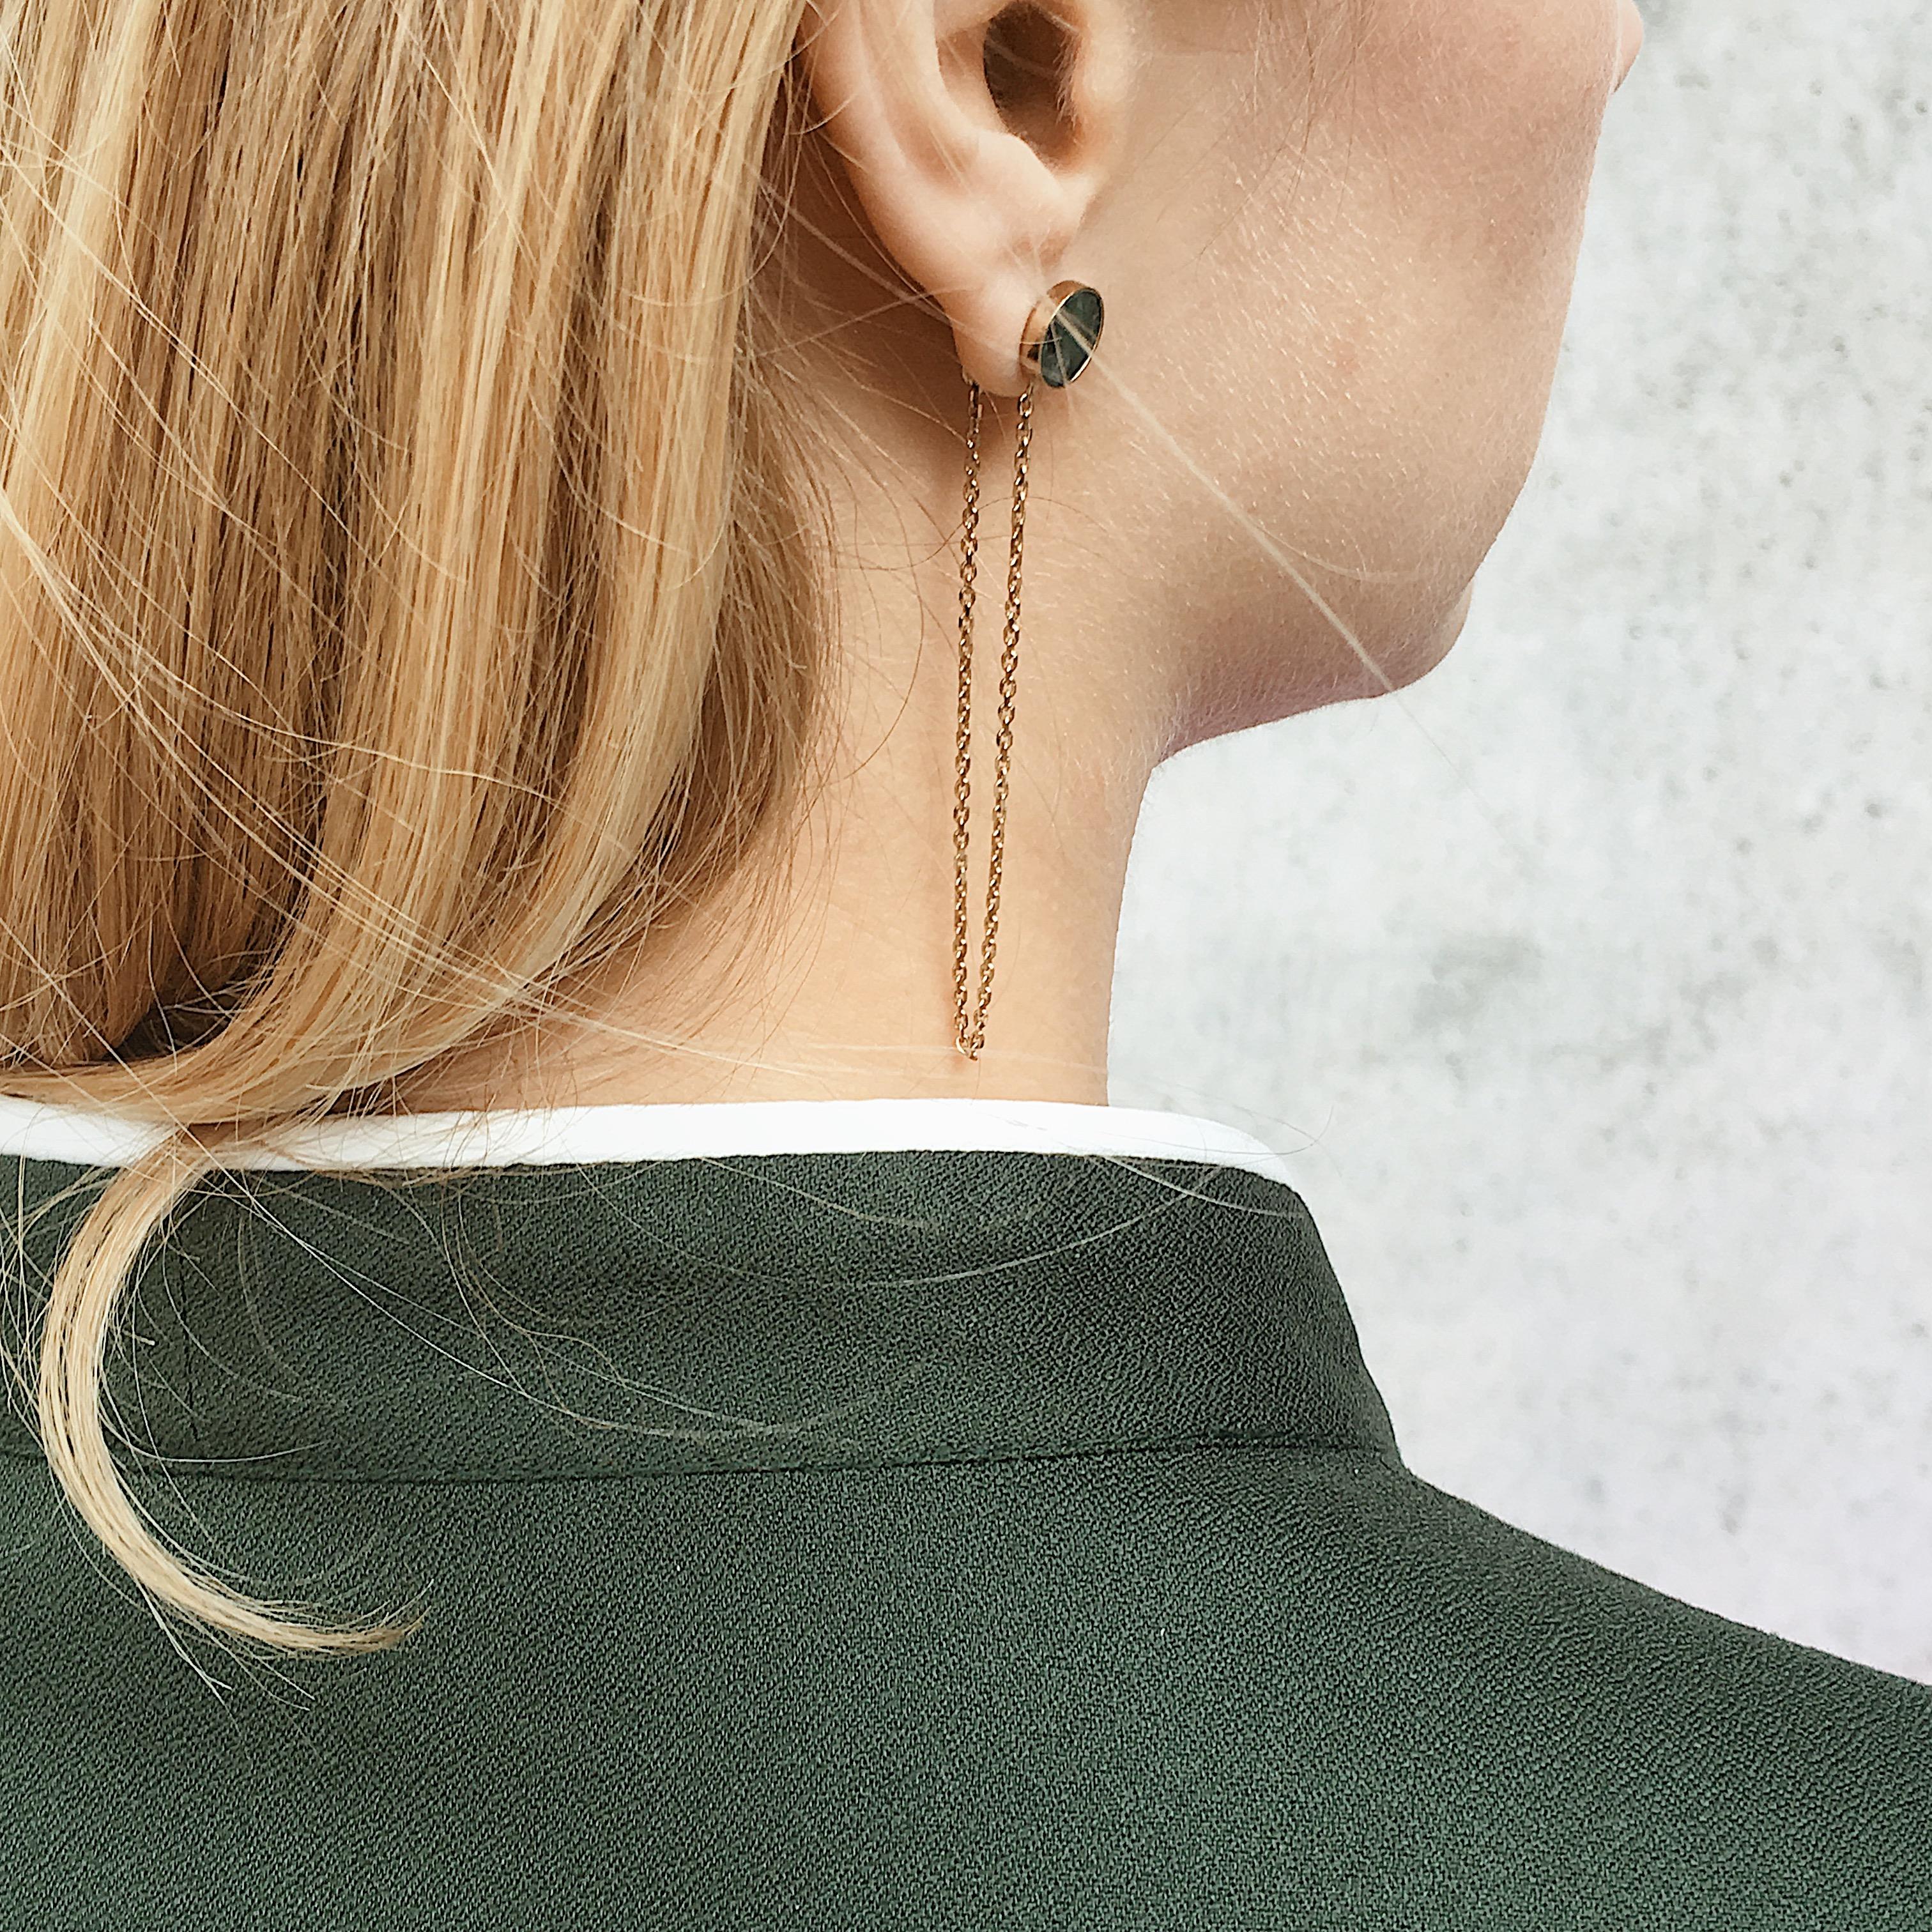 Nos boucles d'oreilles pendantes avec de belles pierres vertes et des chaînes minimalistes sont parfaites pour compléter un grand nombre de vos looks. Vous pouvez les porter avec des tenues décontractées ou des robes élégantes pour les dîners entre